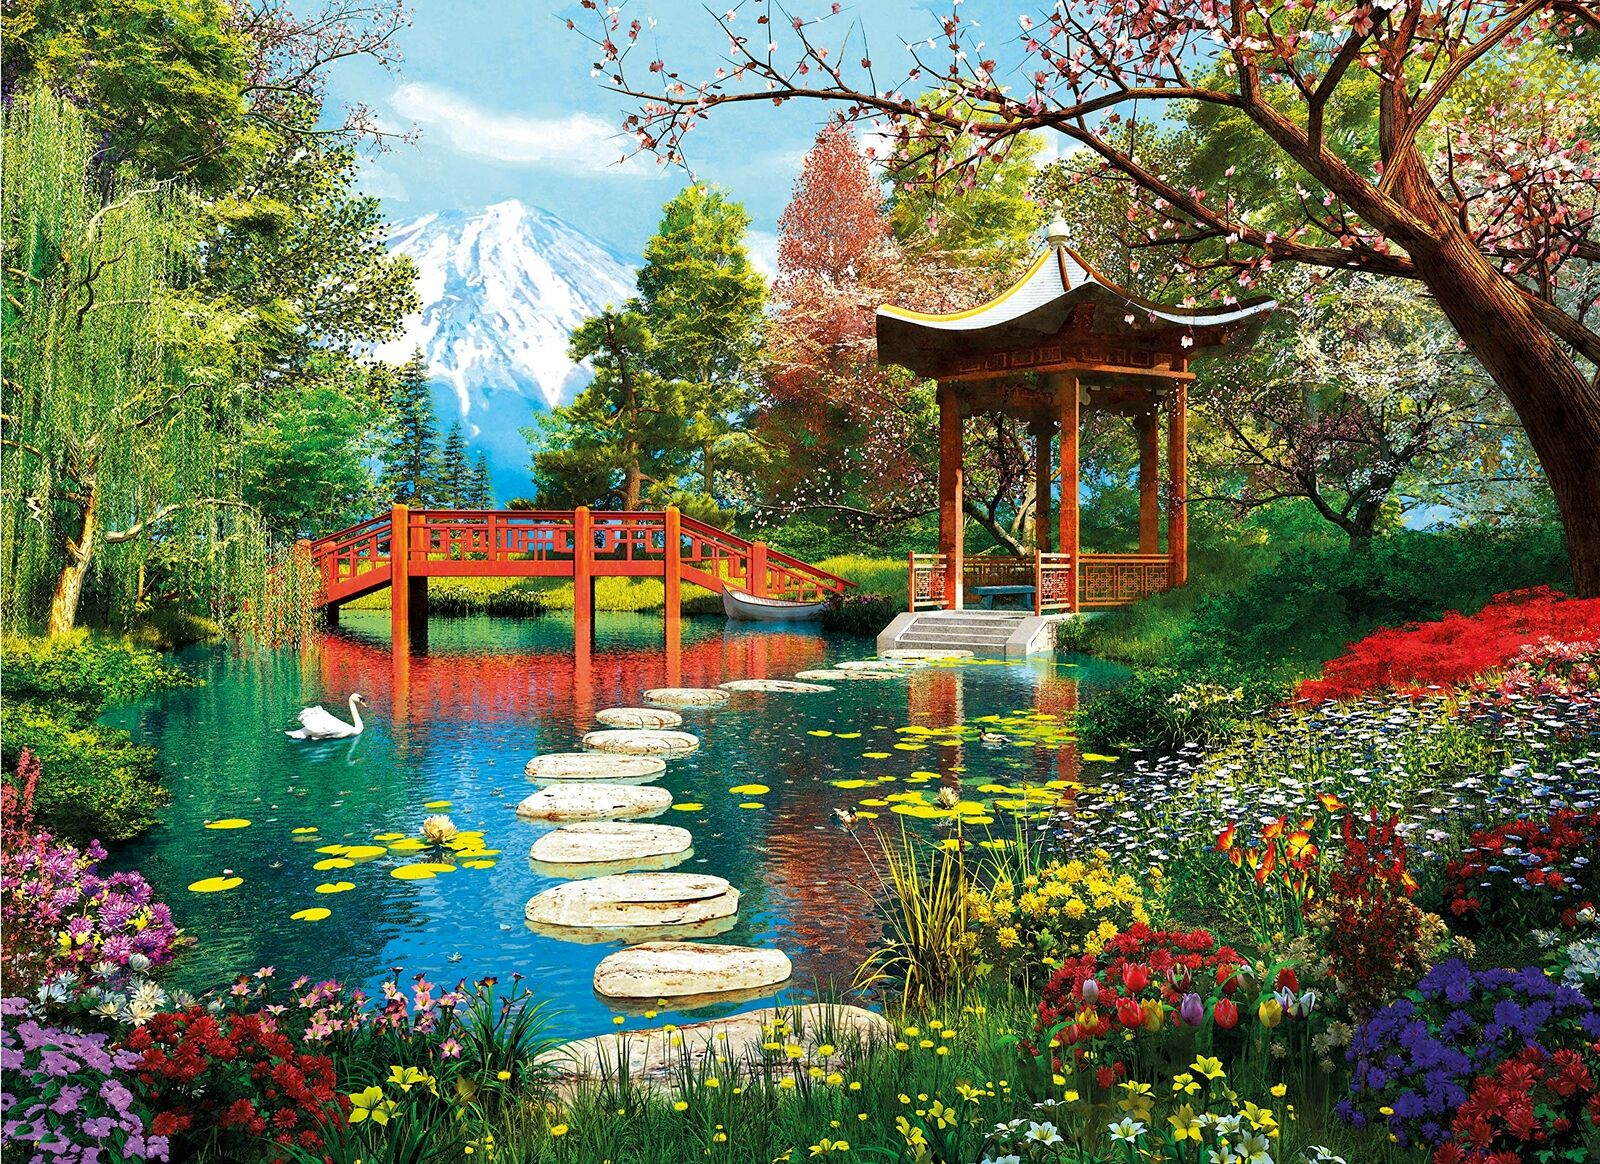 Забронировать столик в японском саду